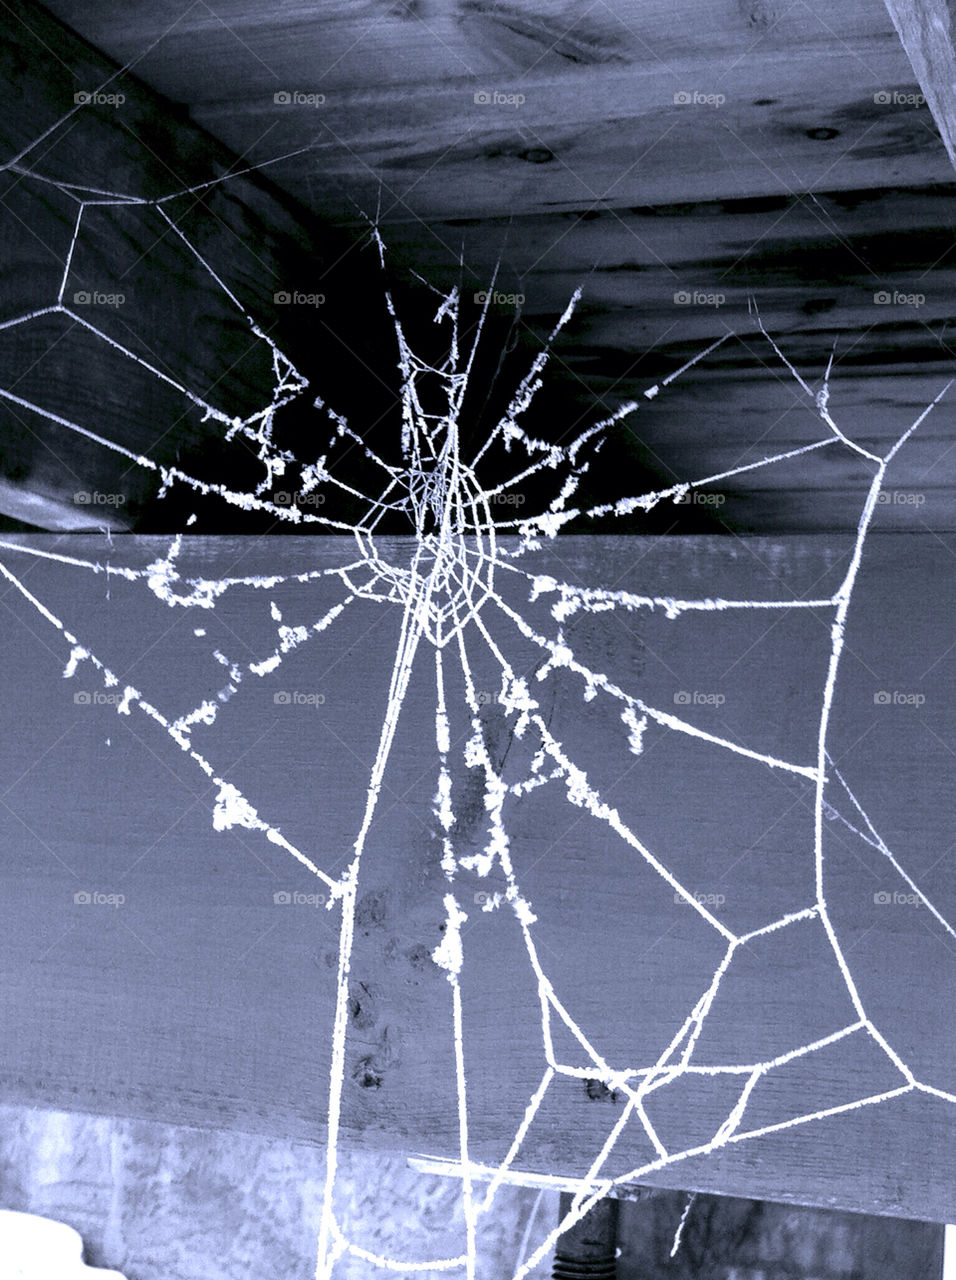 Spider, Spiderweb, Cobweb, Danger, Trap